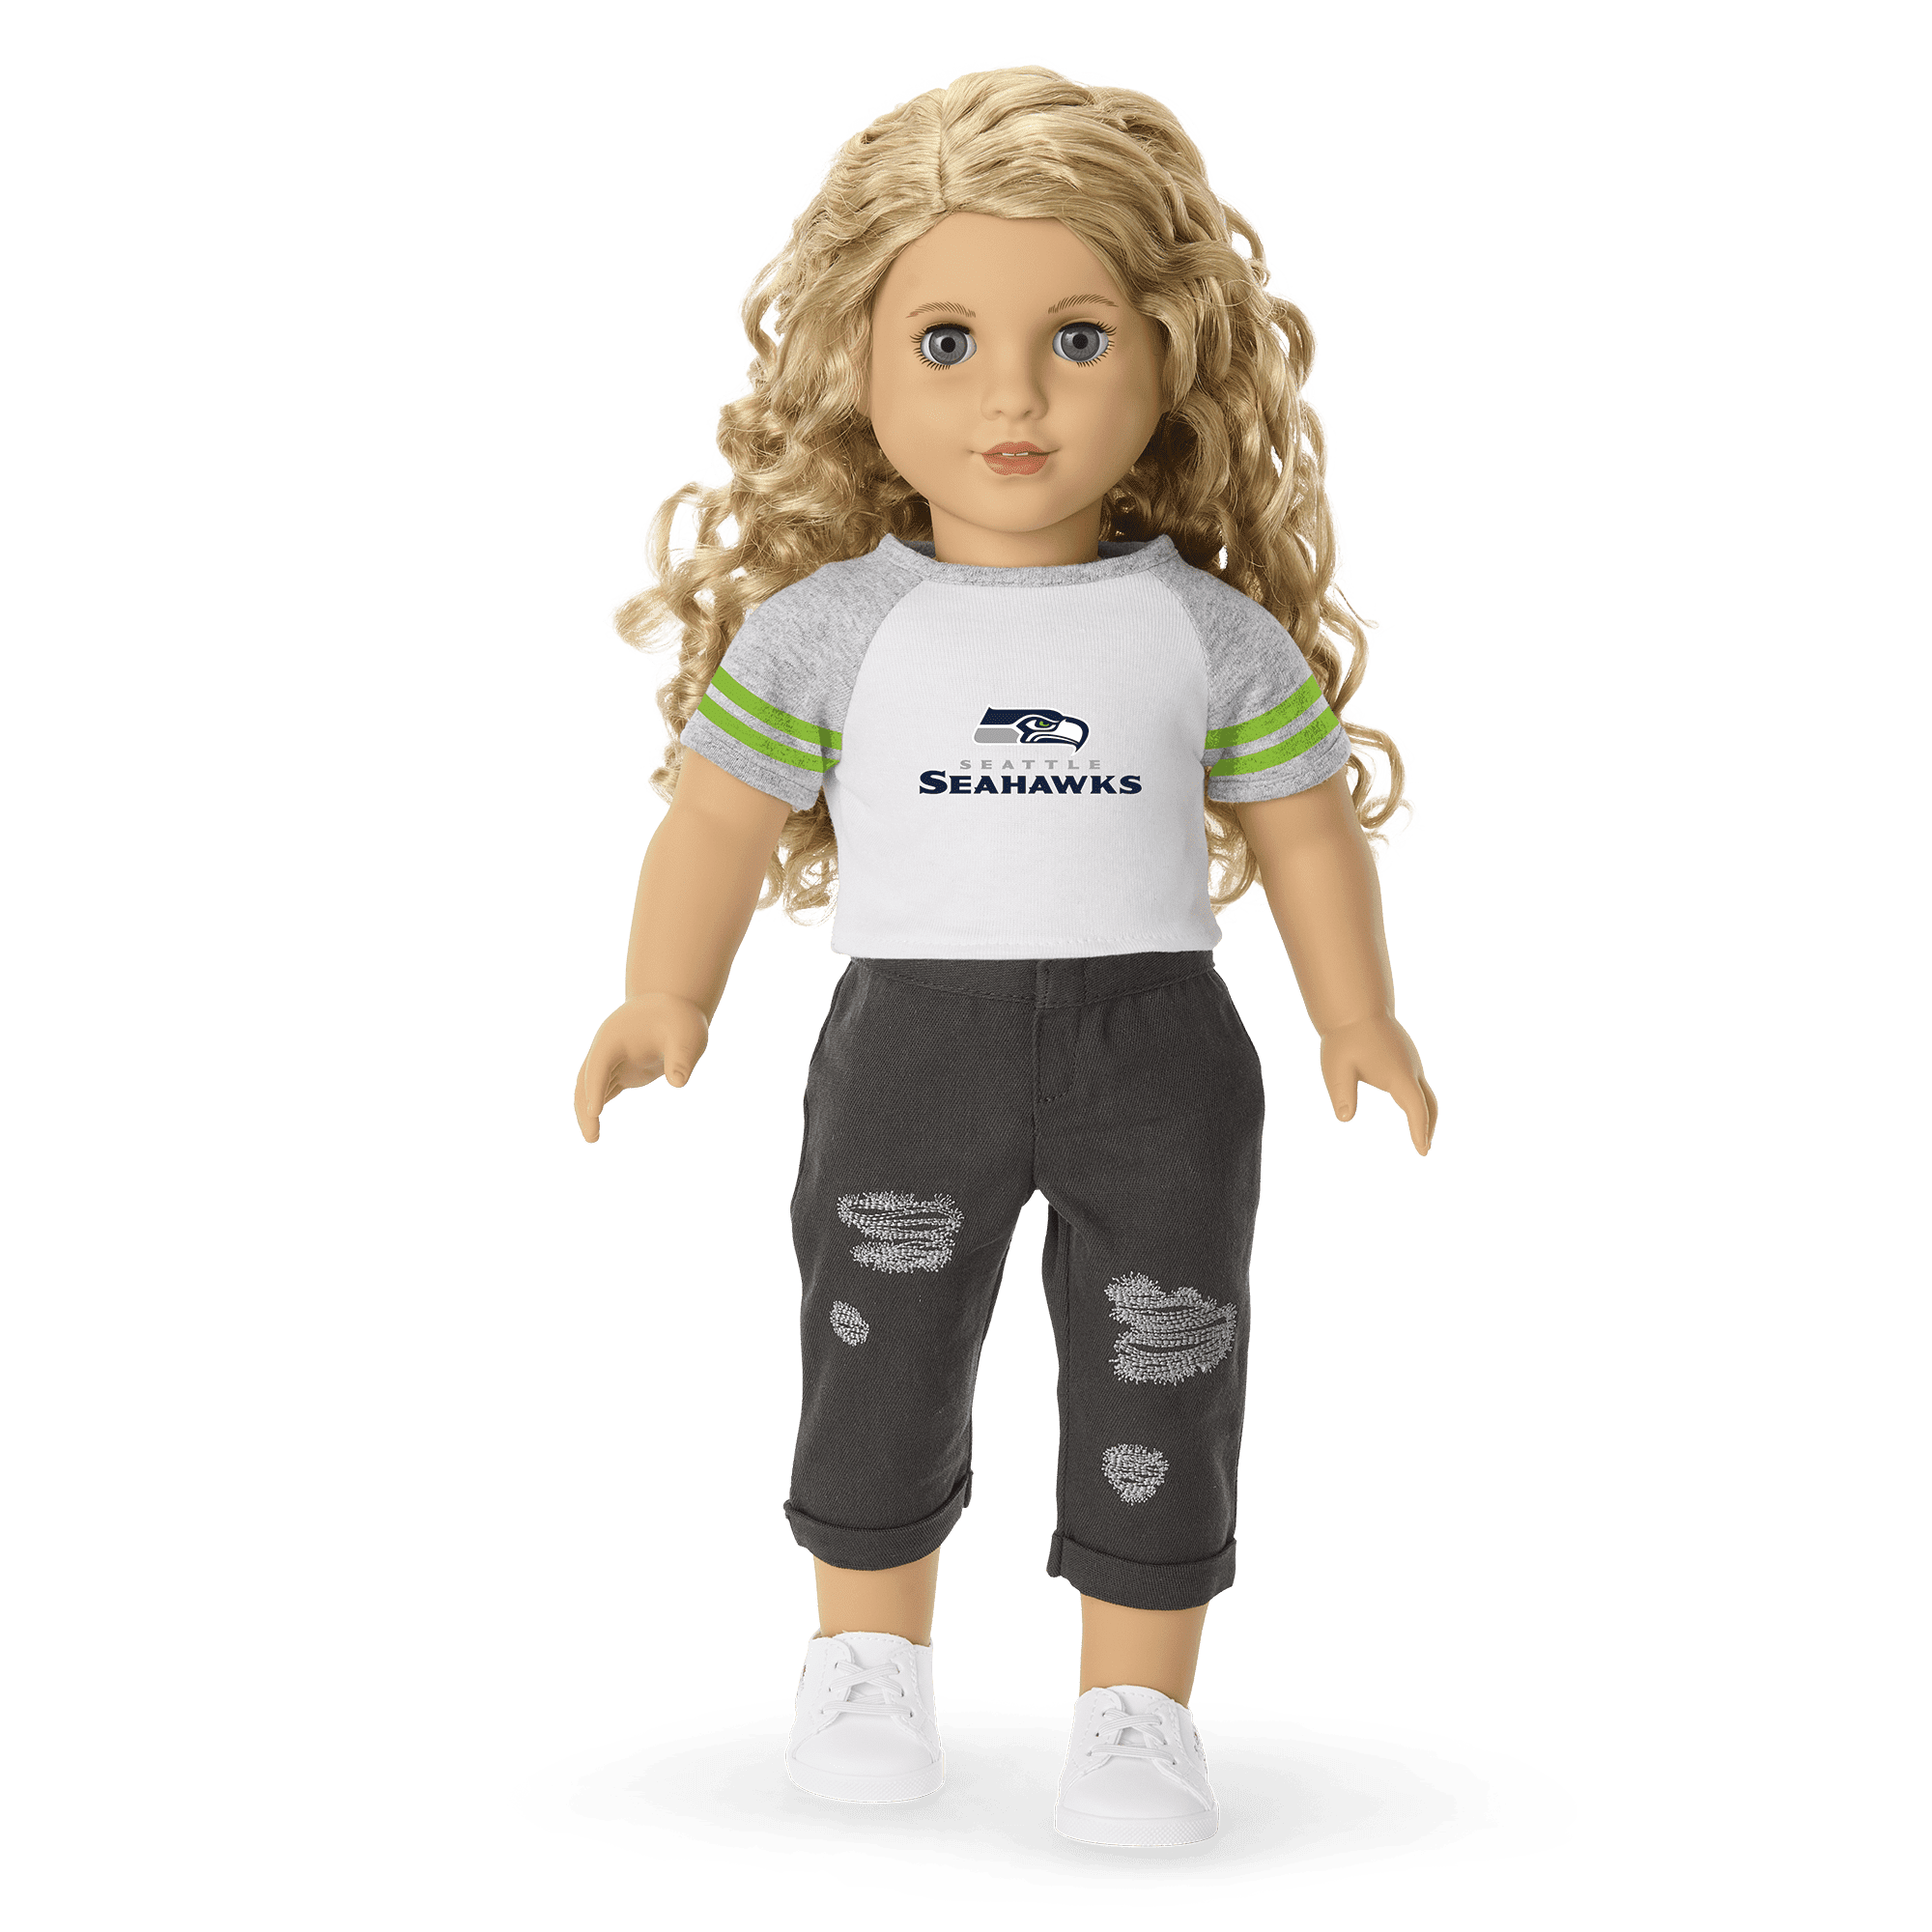 American Girl® x NFL Seattle Seahawks Fan Tee for 18-inch Dolls